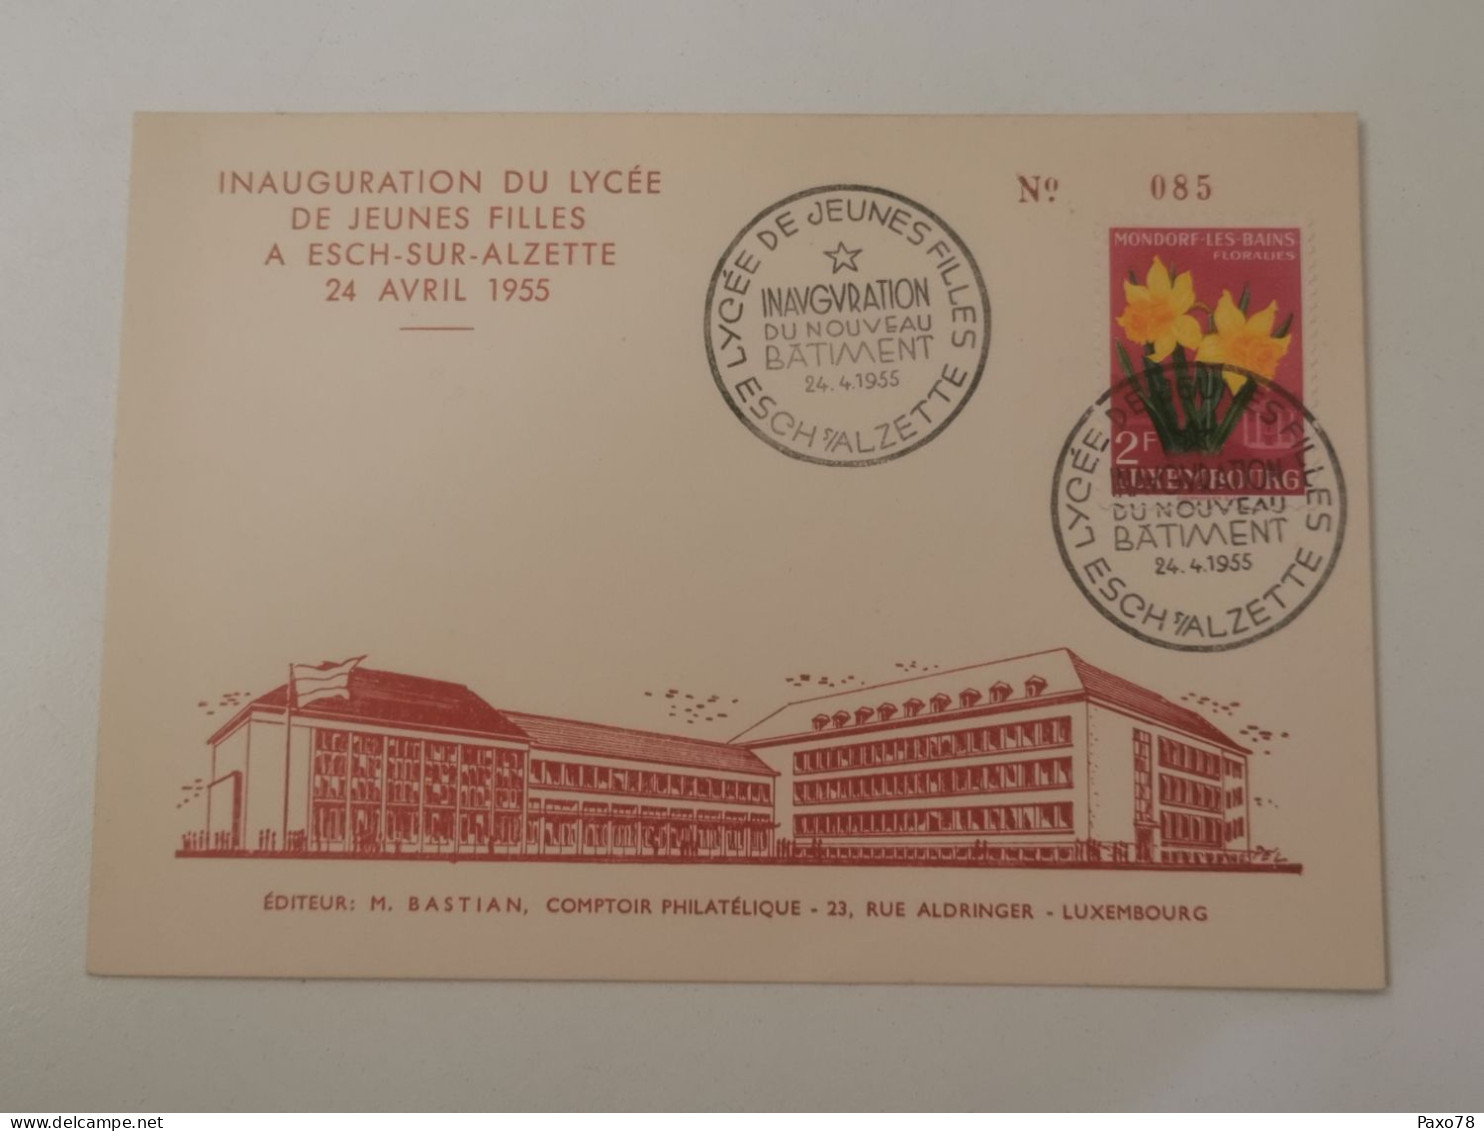 Inauguration Du Lycée De Jeunes Filles à Esch-Alzette 1955 - Commemoration Cards